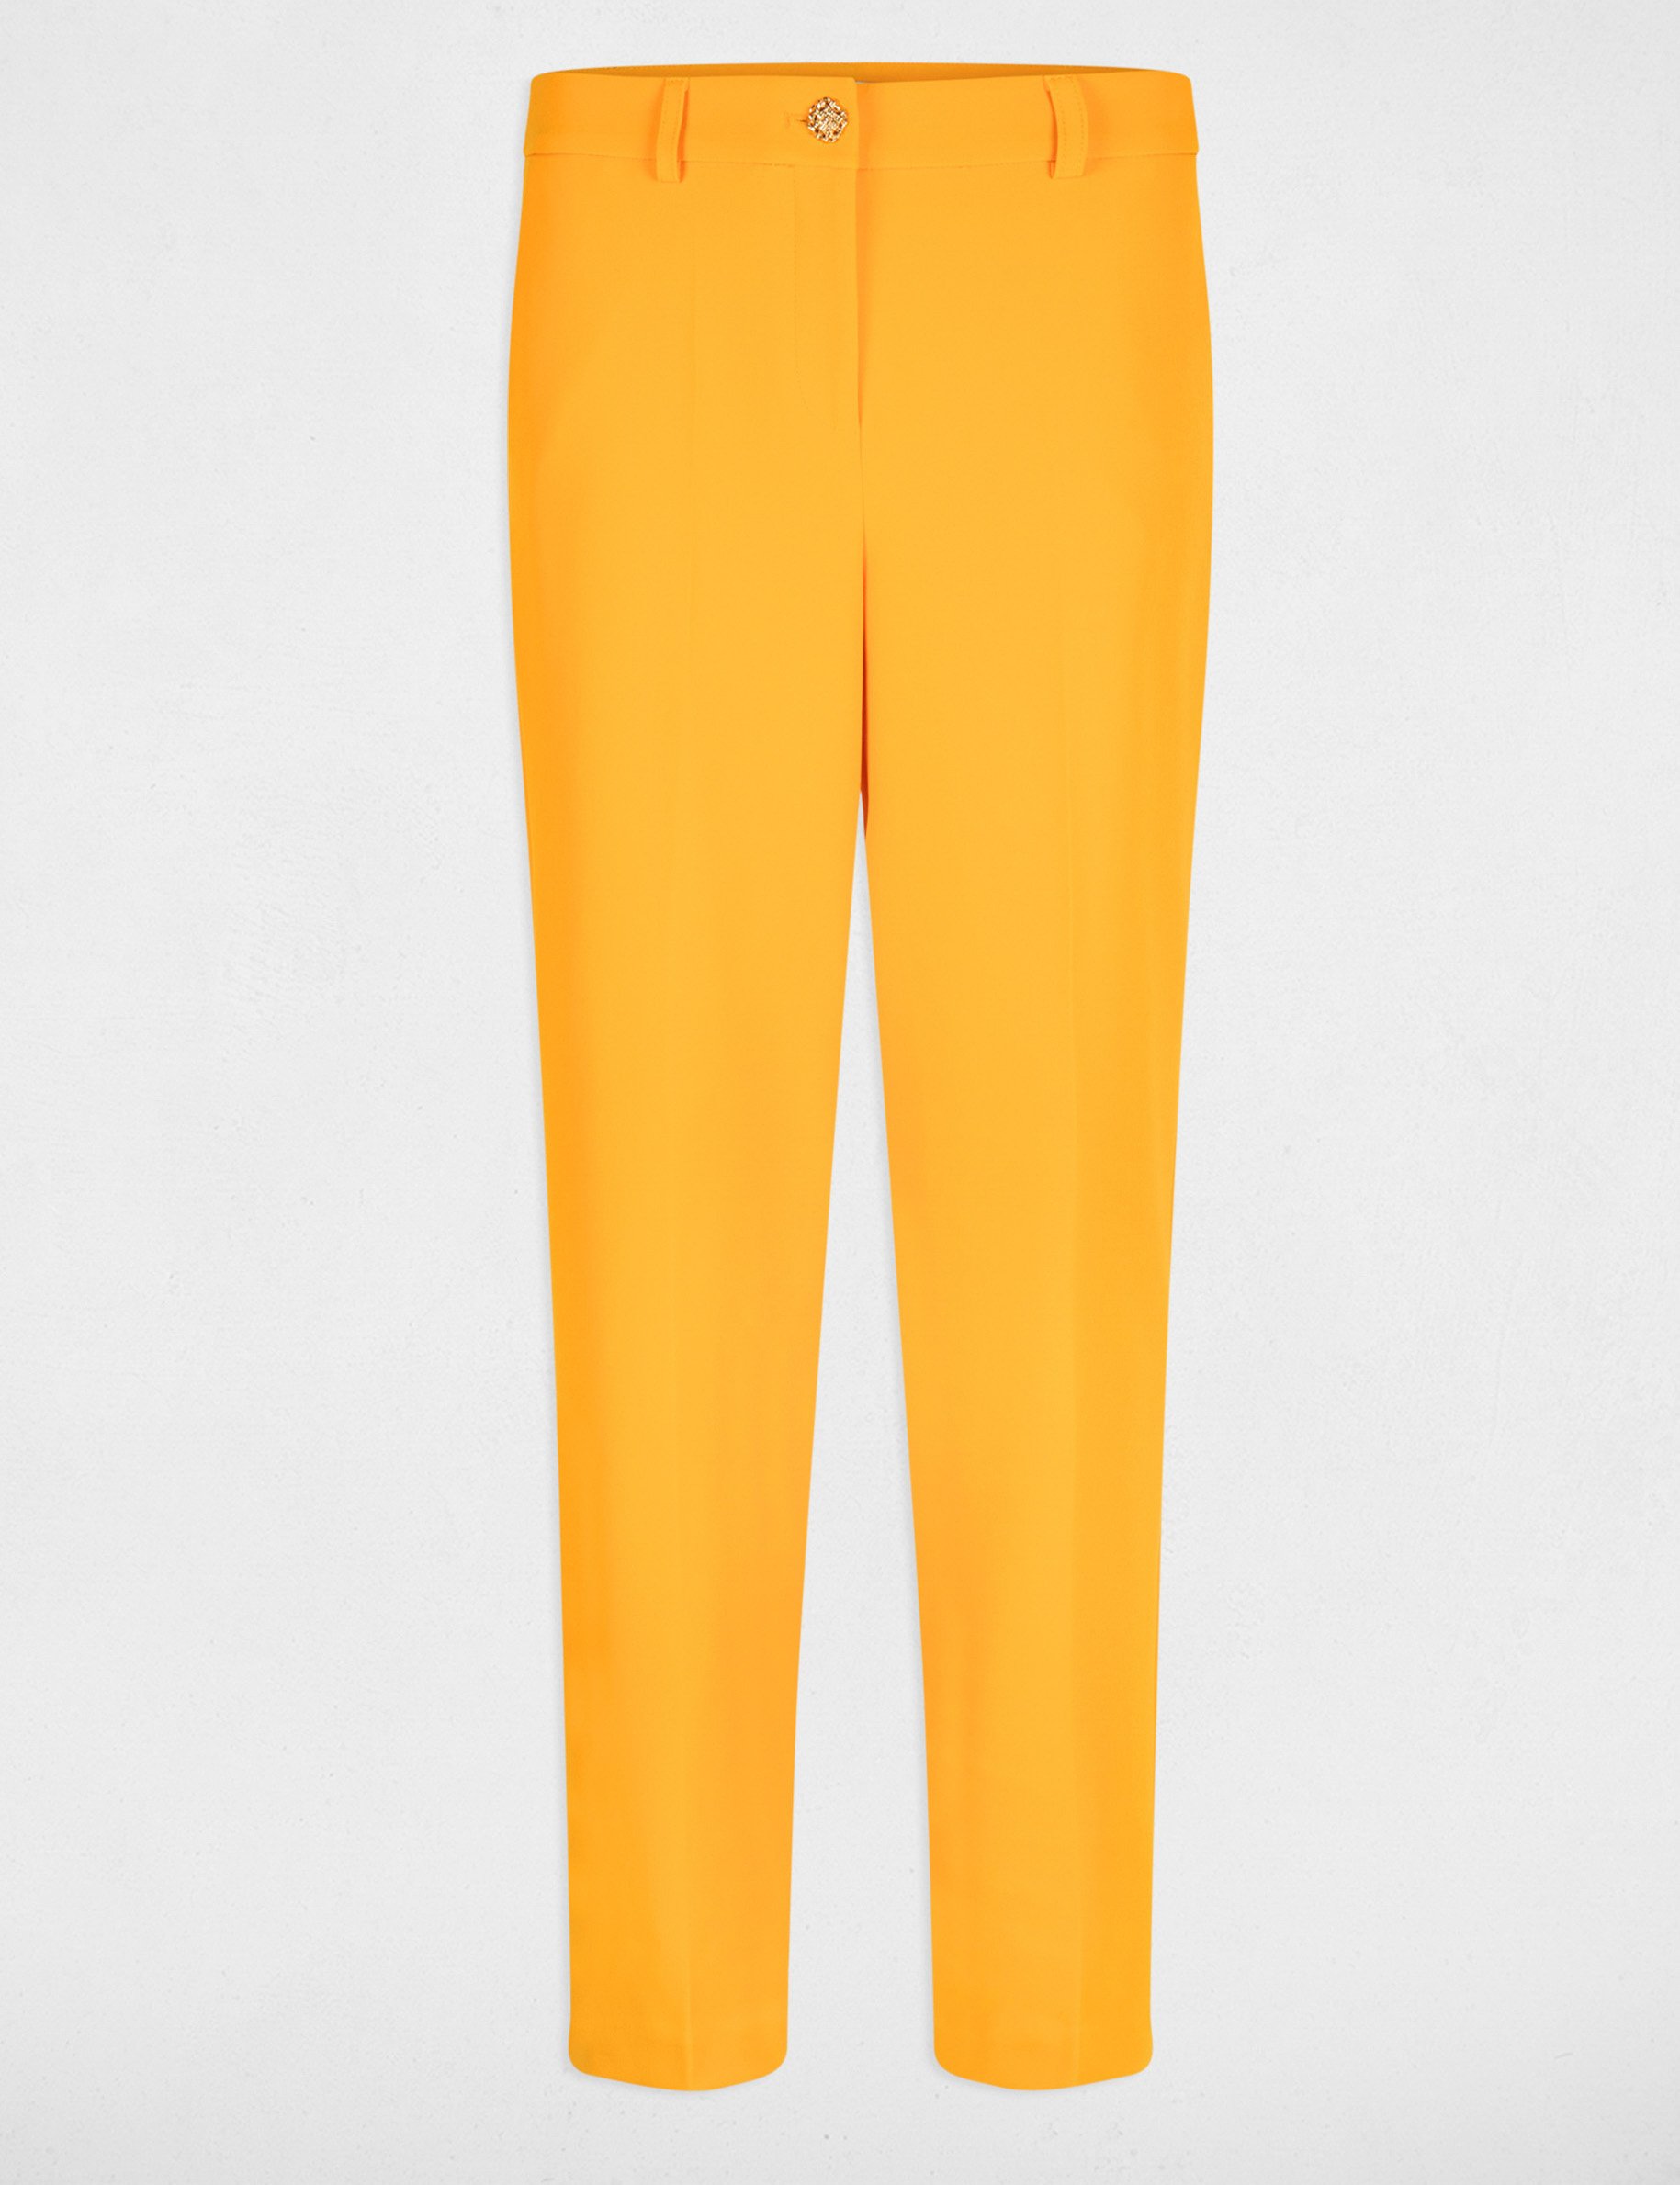 Pantalon ajusté orange femme